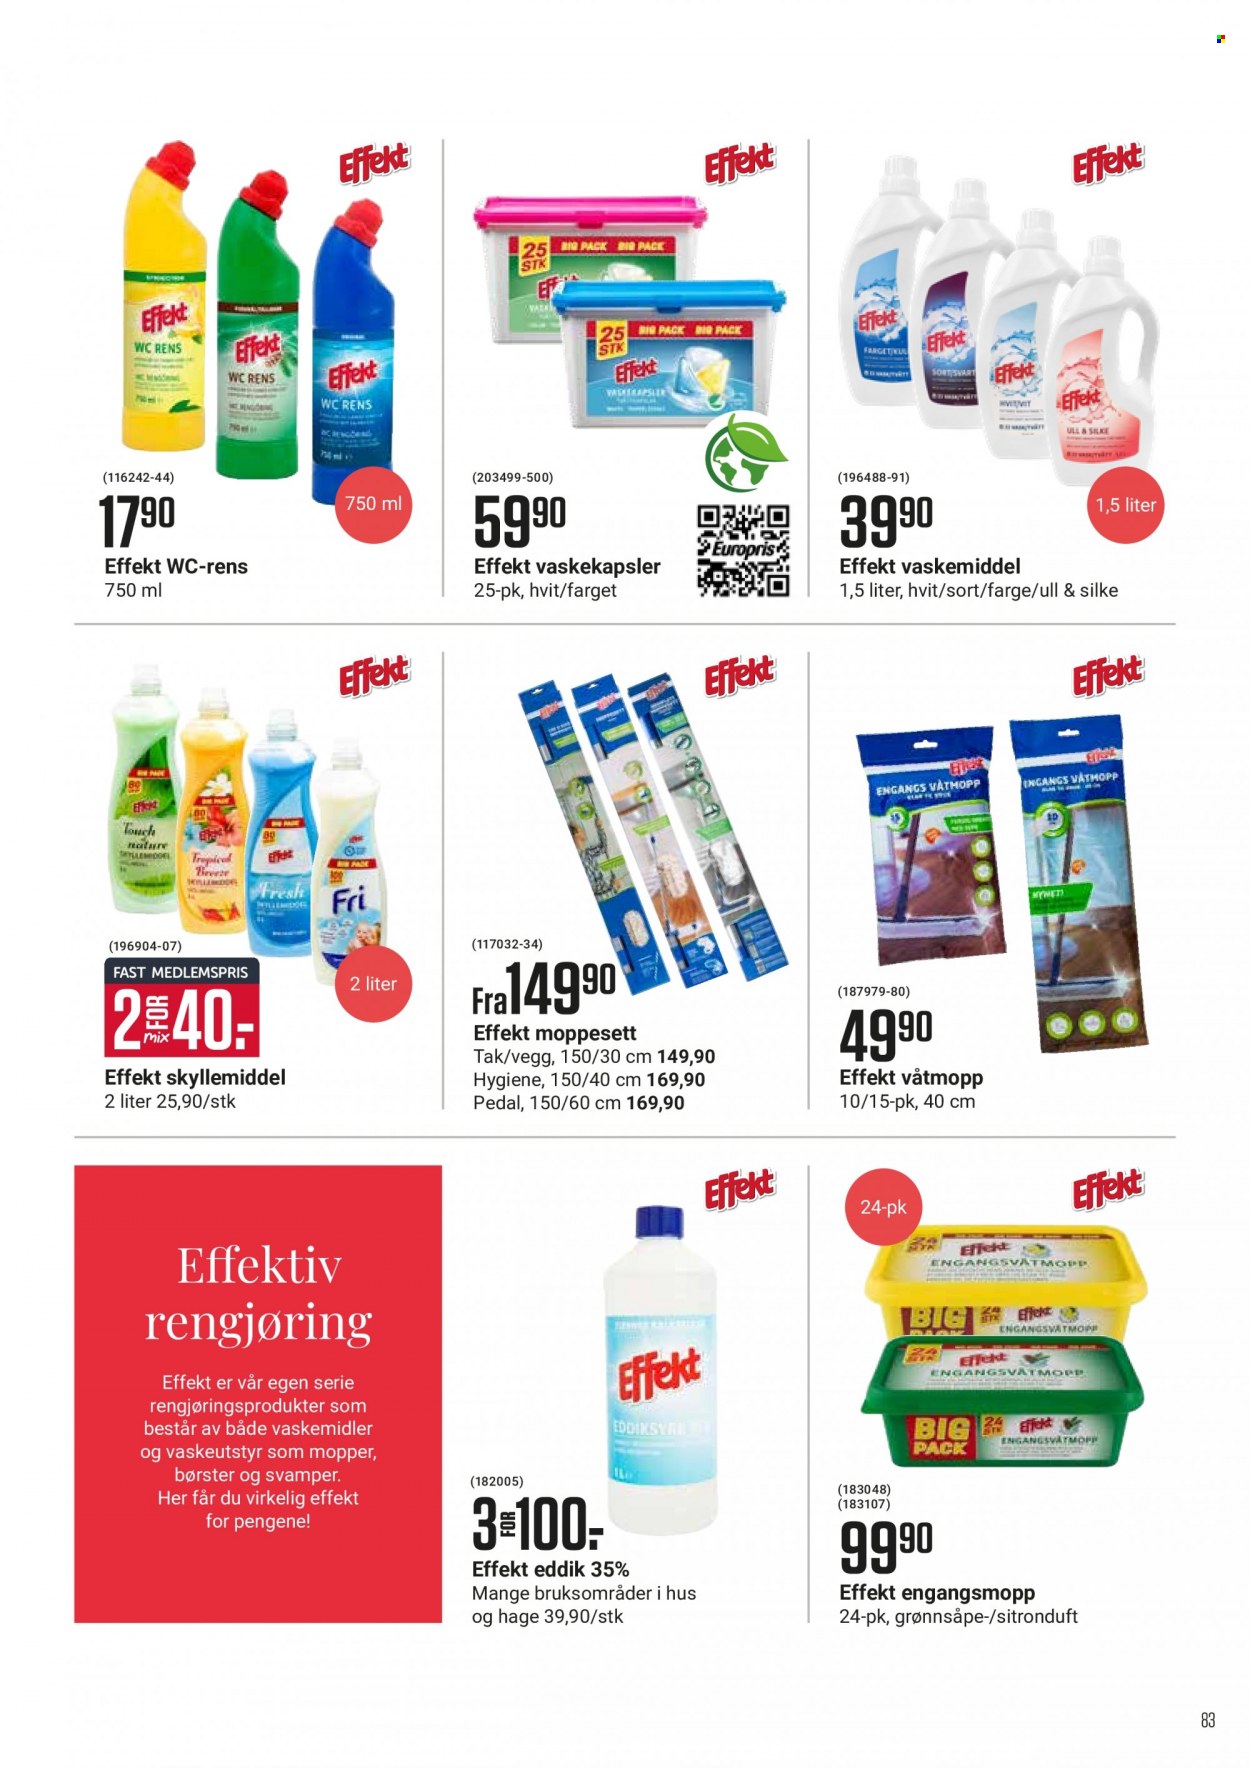 Kundeavis Europris - Produkter fra tilbudsaviser - rengjøringsprodukter, eddik. Side 83.